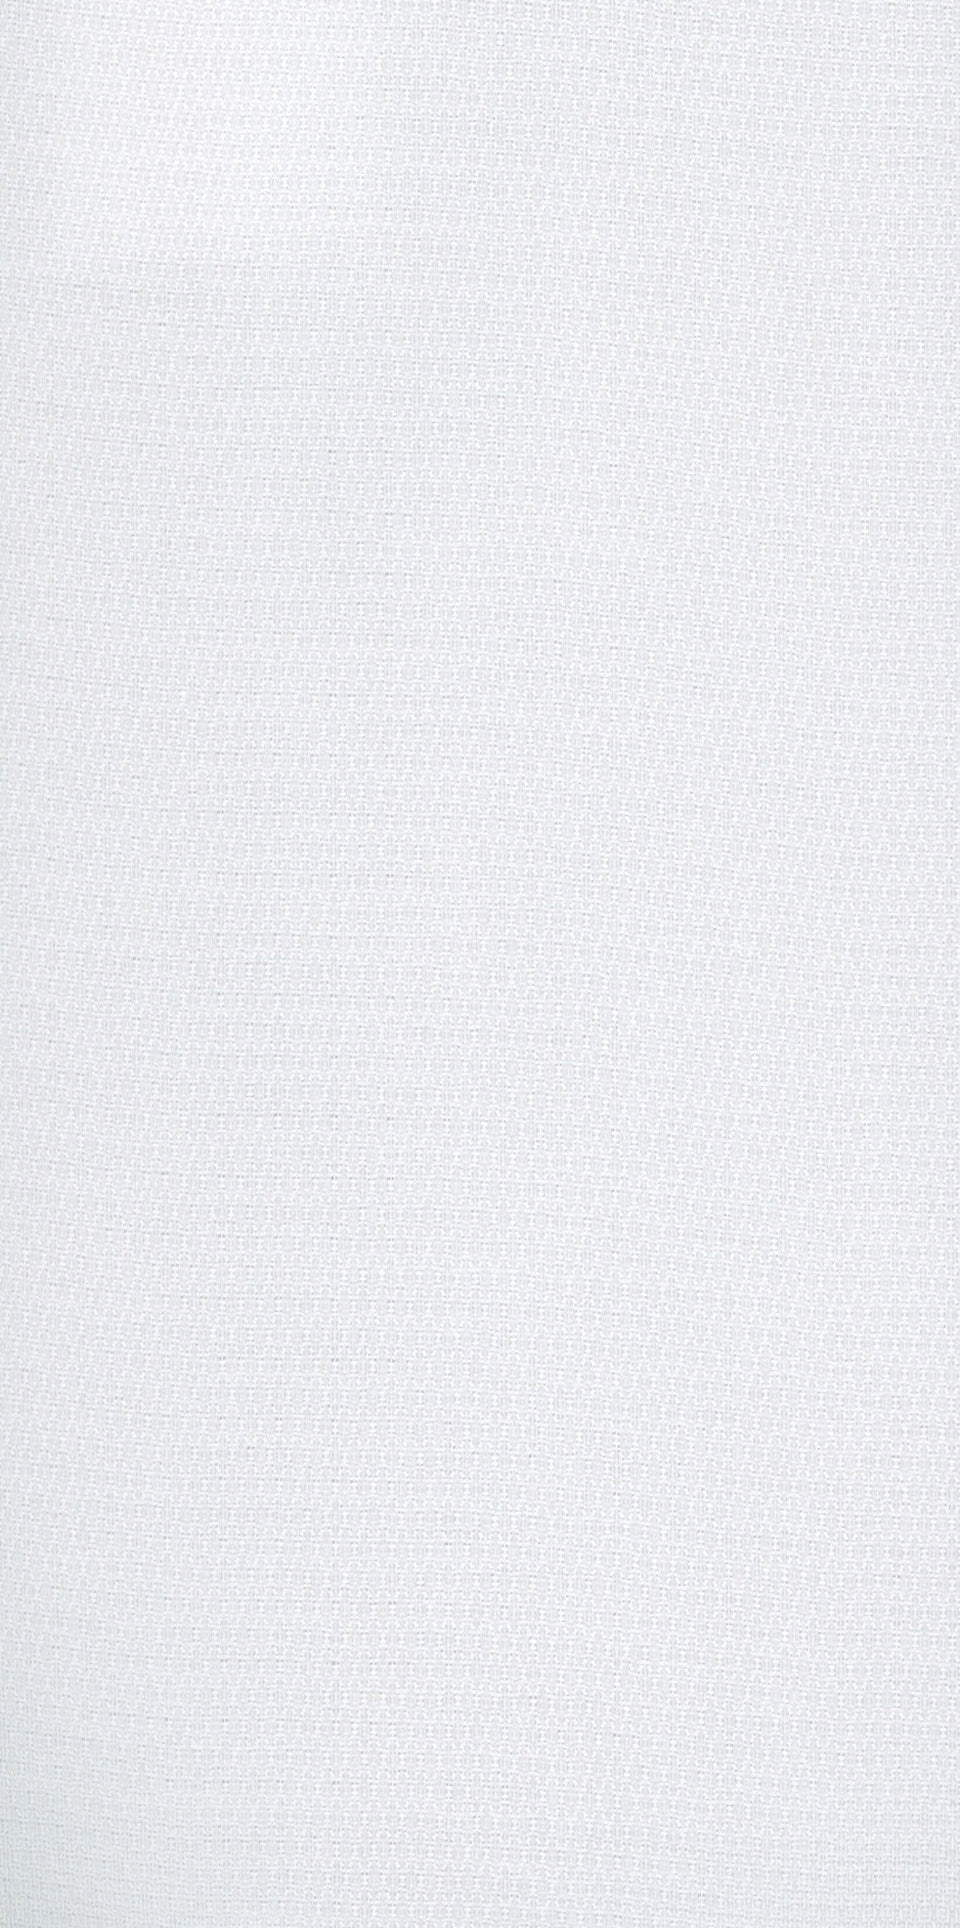 Cotton White Print